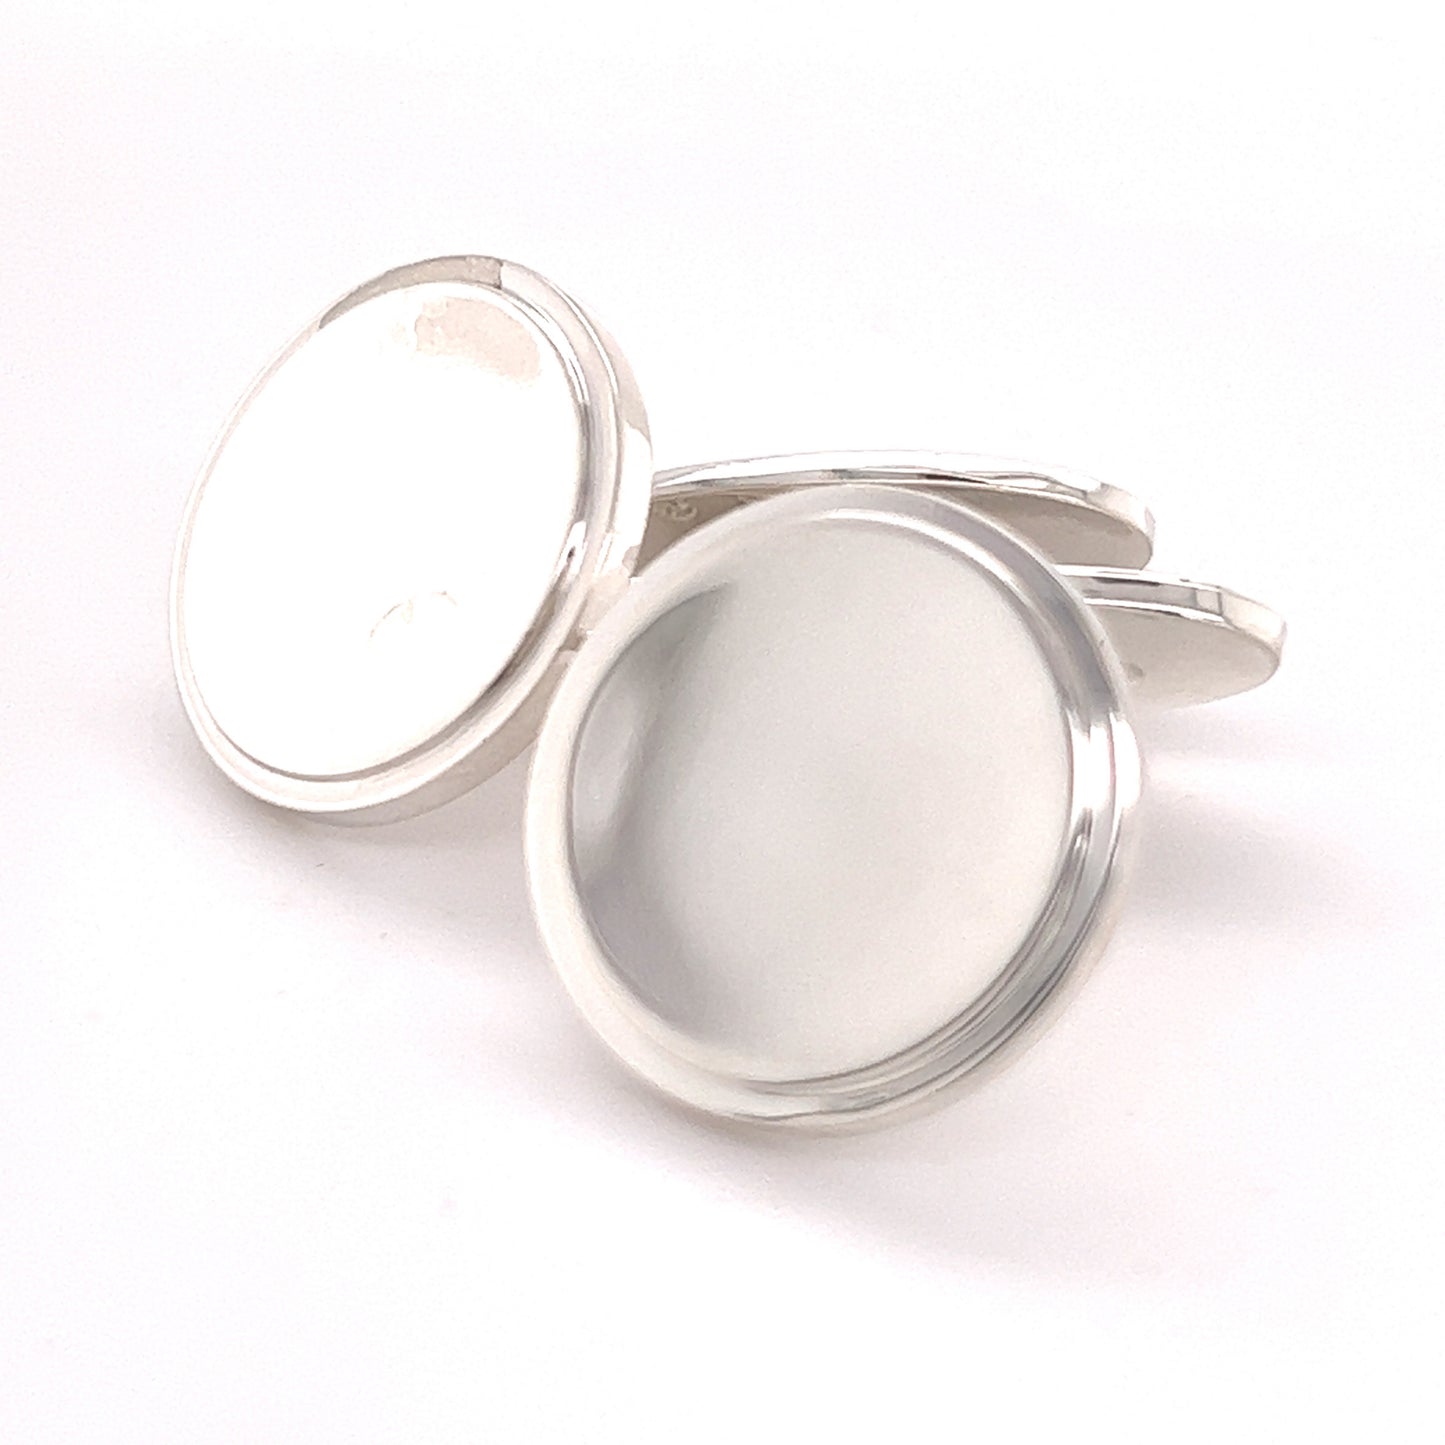 Georg Jensen Estate Sterling Silver Cufflinks 16.84 Grams GJ6 - Certified Fine Jewelry